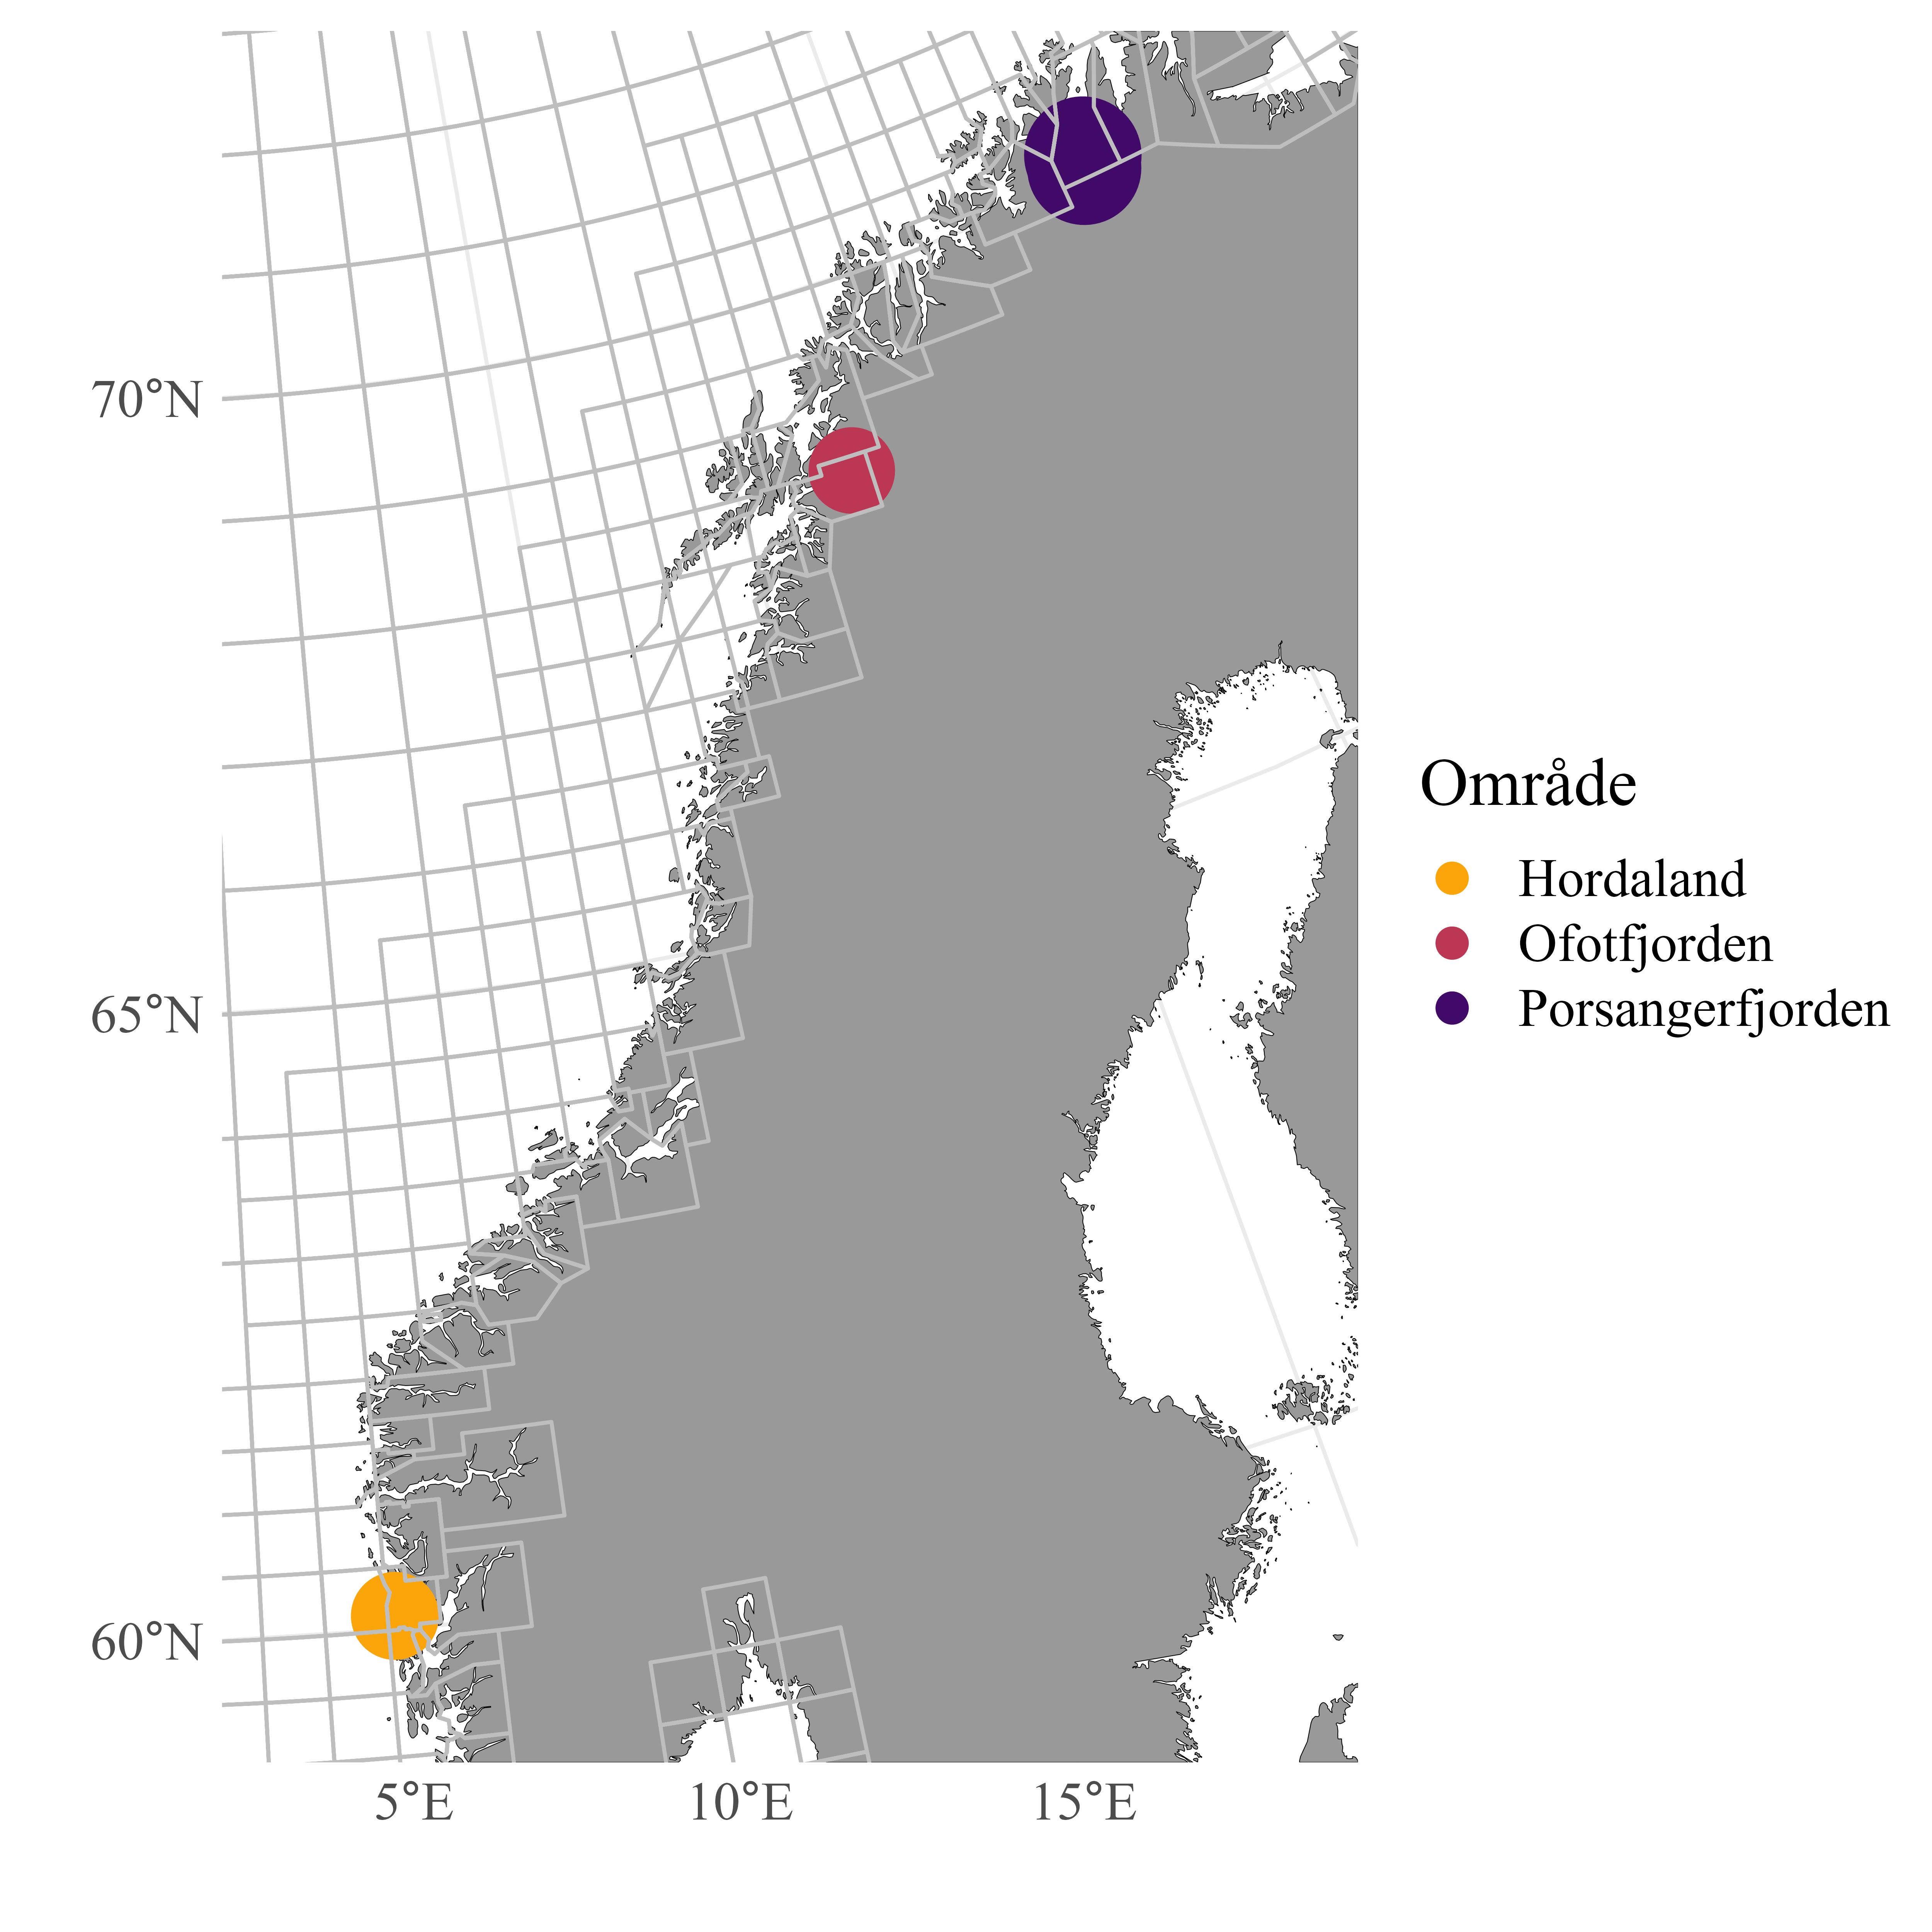 Kartet viser hvor de tre teinefiskerne som sendte fangstdata til HI, holder til. 